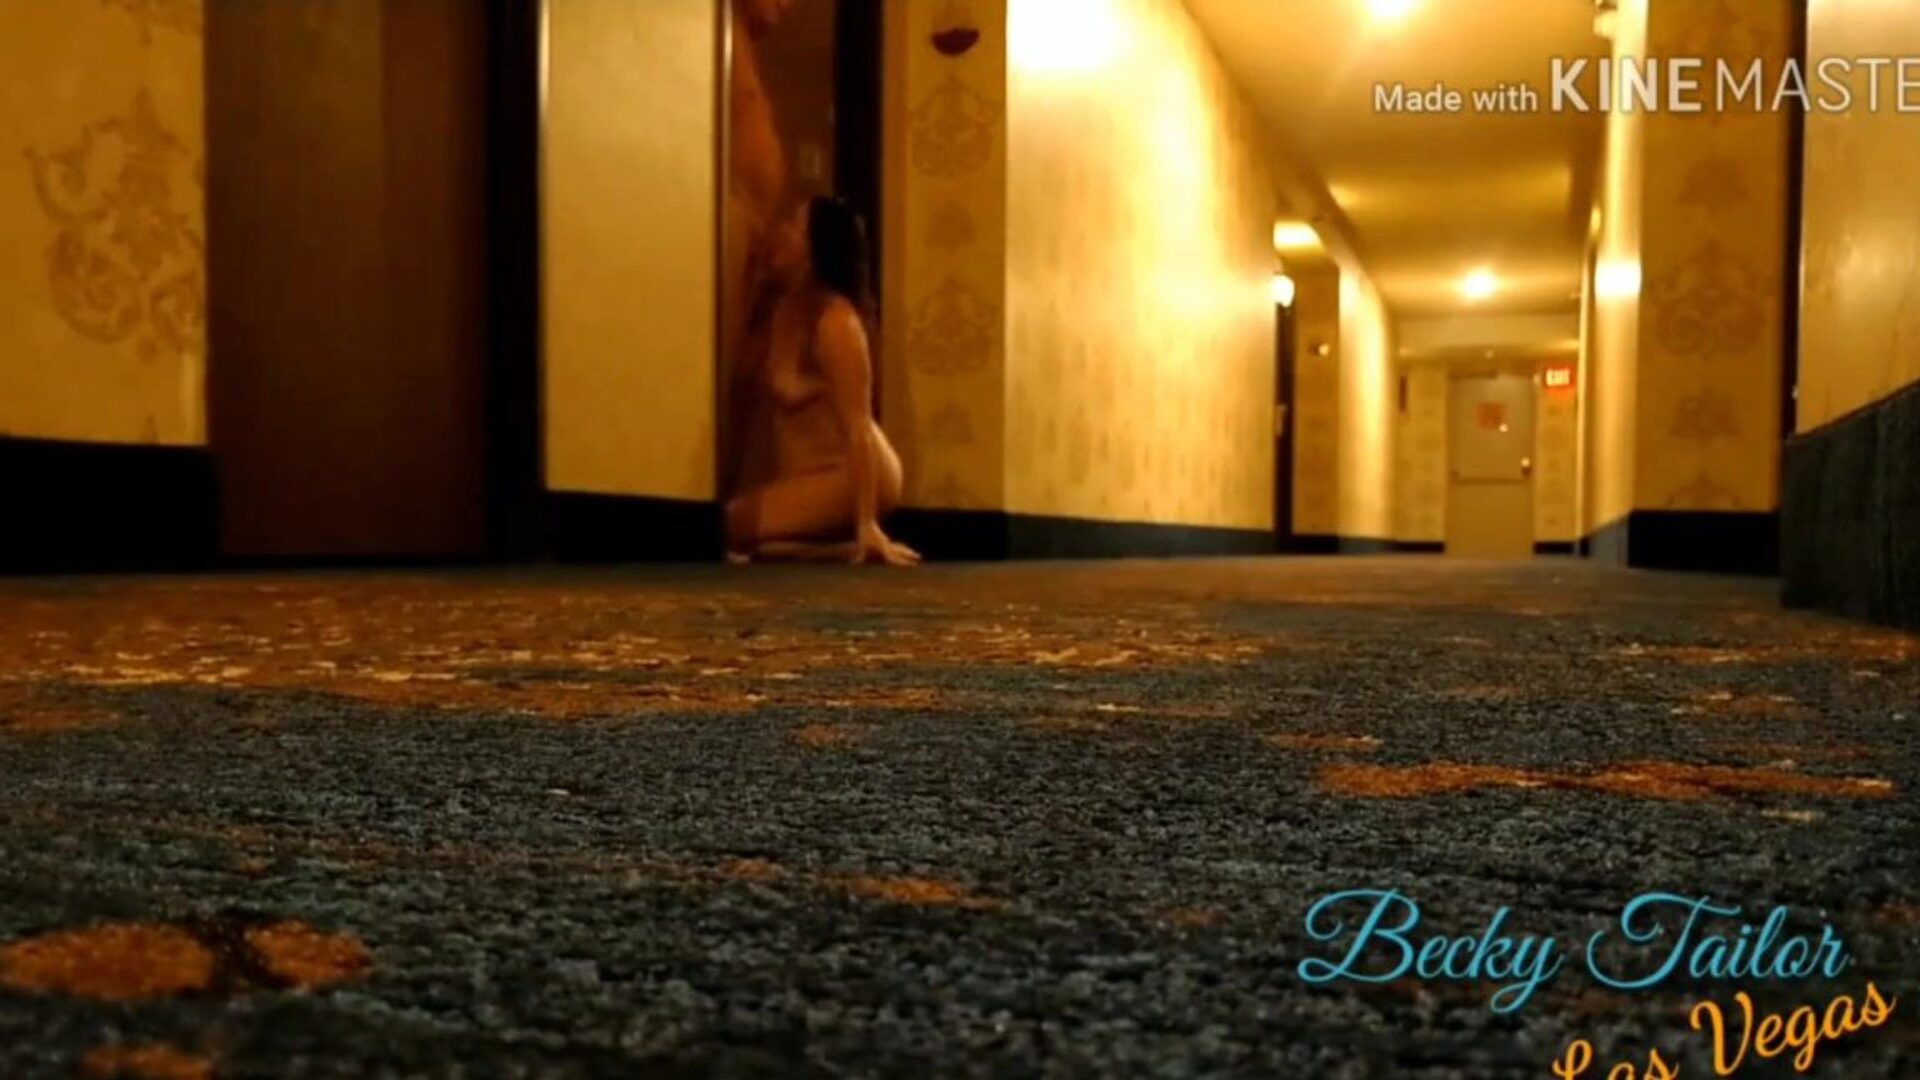 cazzo di moglie nel corridoio dell'hotel di Las Vegas, porno gratis 0b: xhamster guarda la moglie del cazzo nel corridoio dell'hotel di Las Vegas clip su xhamster, la più eccellente pagina web di sex tube hd con tonnellate di madre gratis mi piacerebbe scopare voyeur e telecamera nascosta film porno